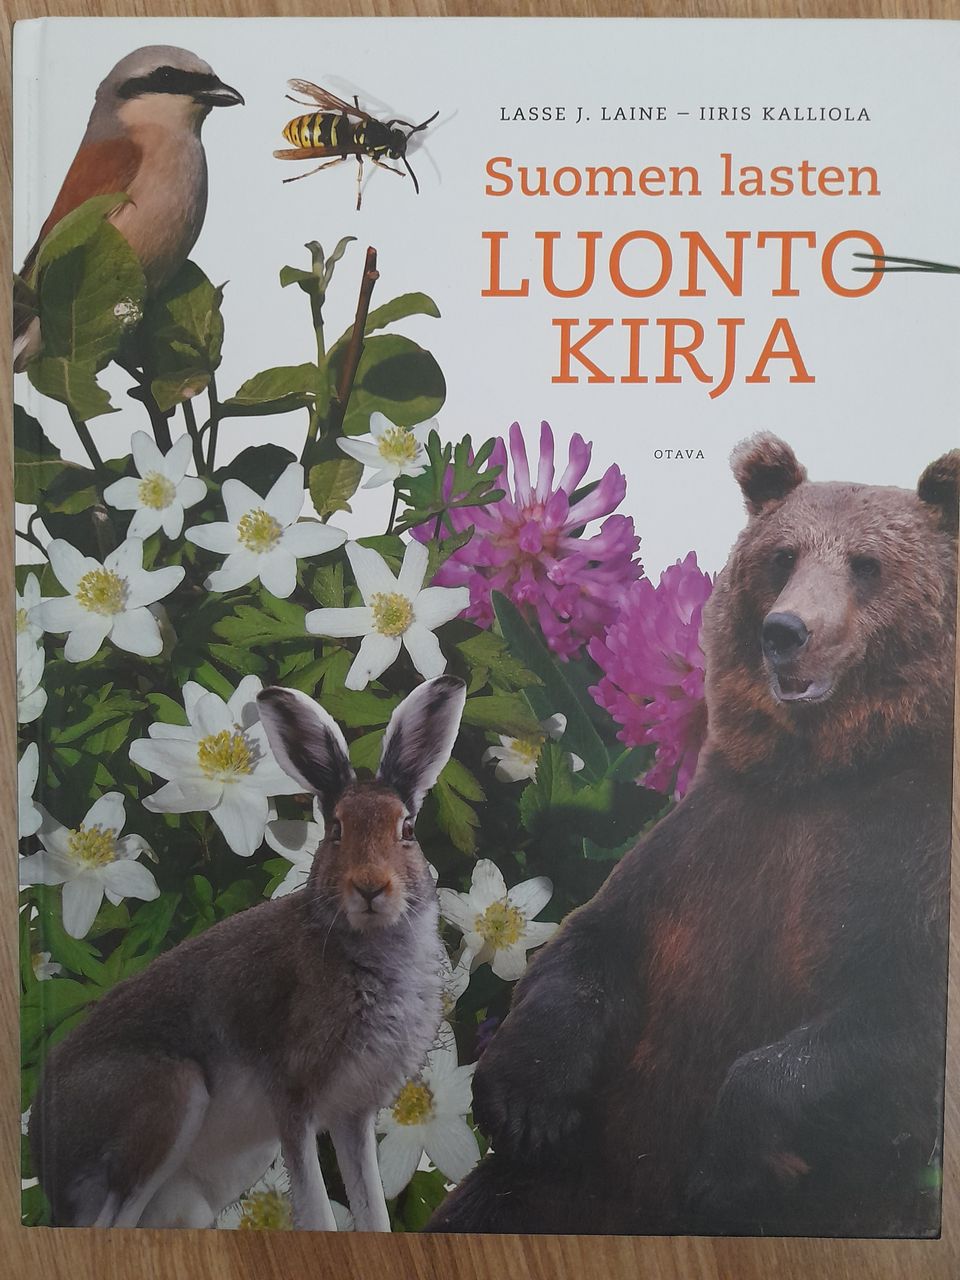 Suomen lasten luontokirja